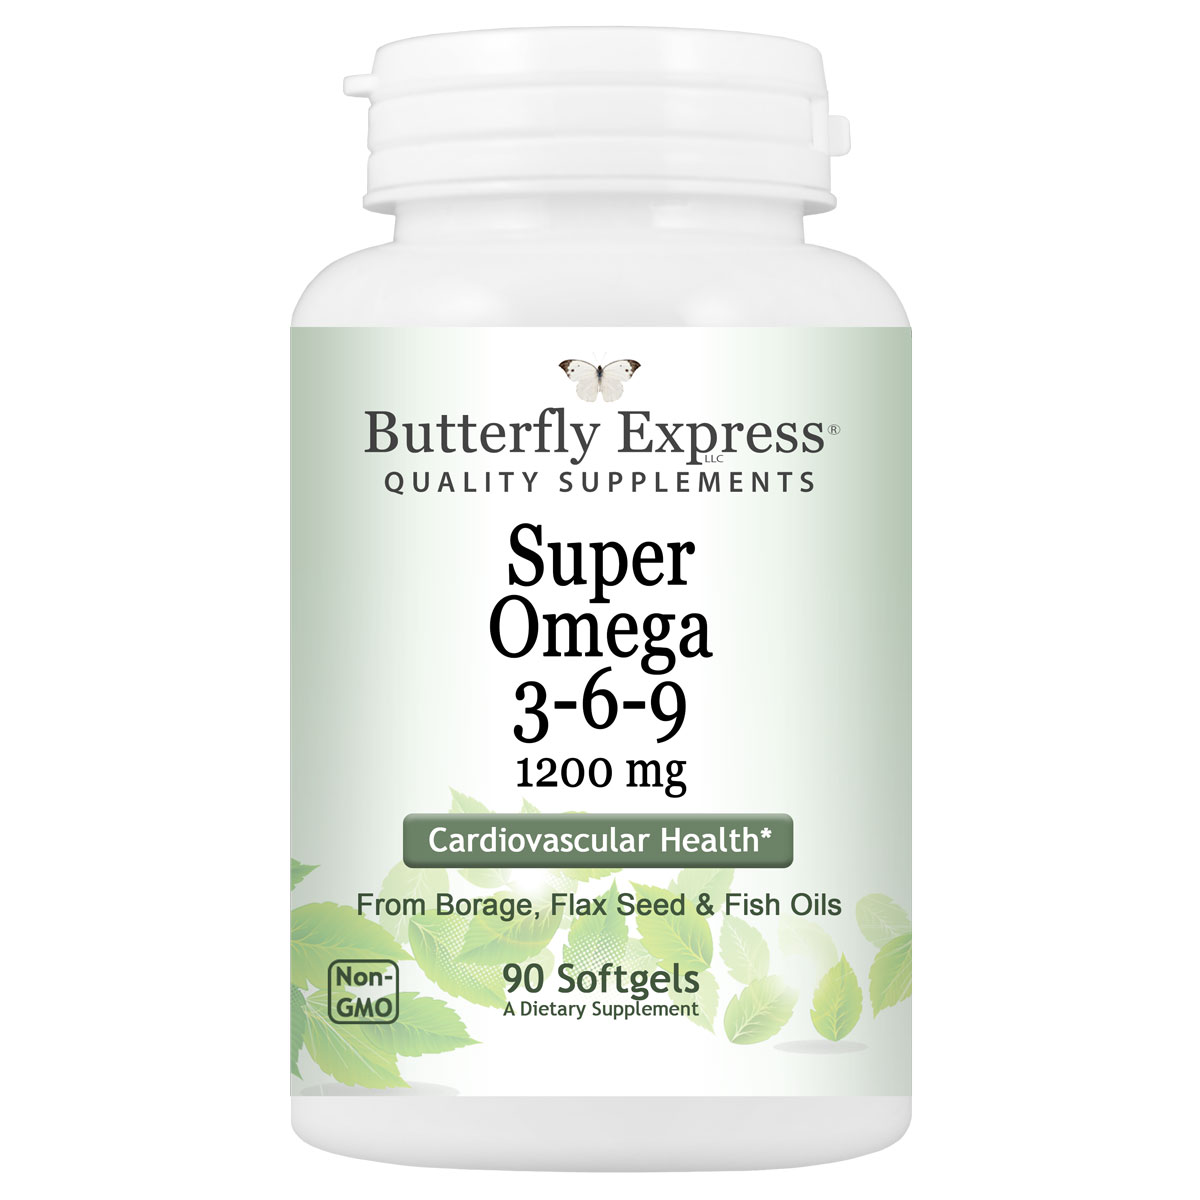 Super Omega 3-6-9 Supplement